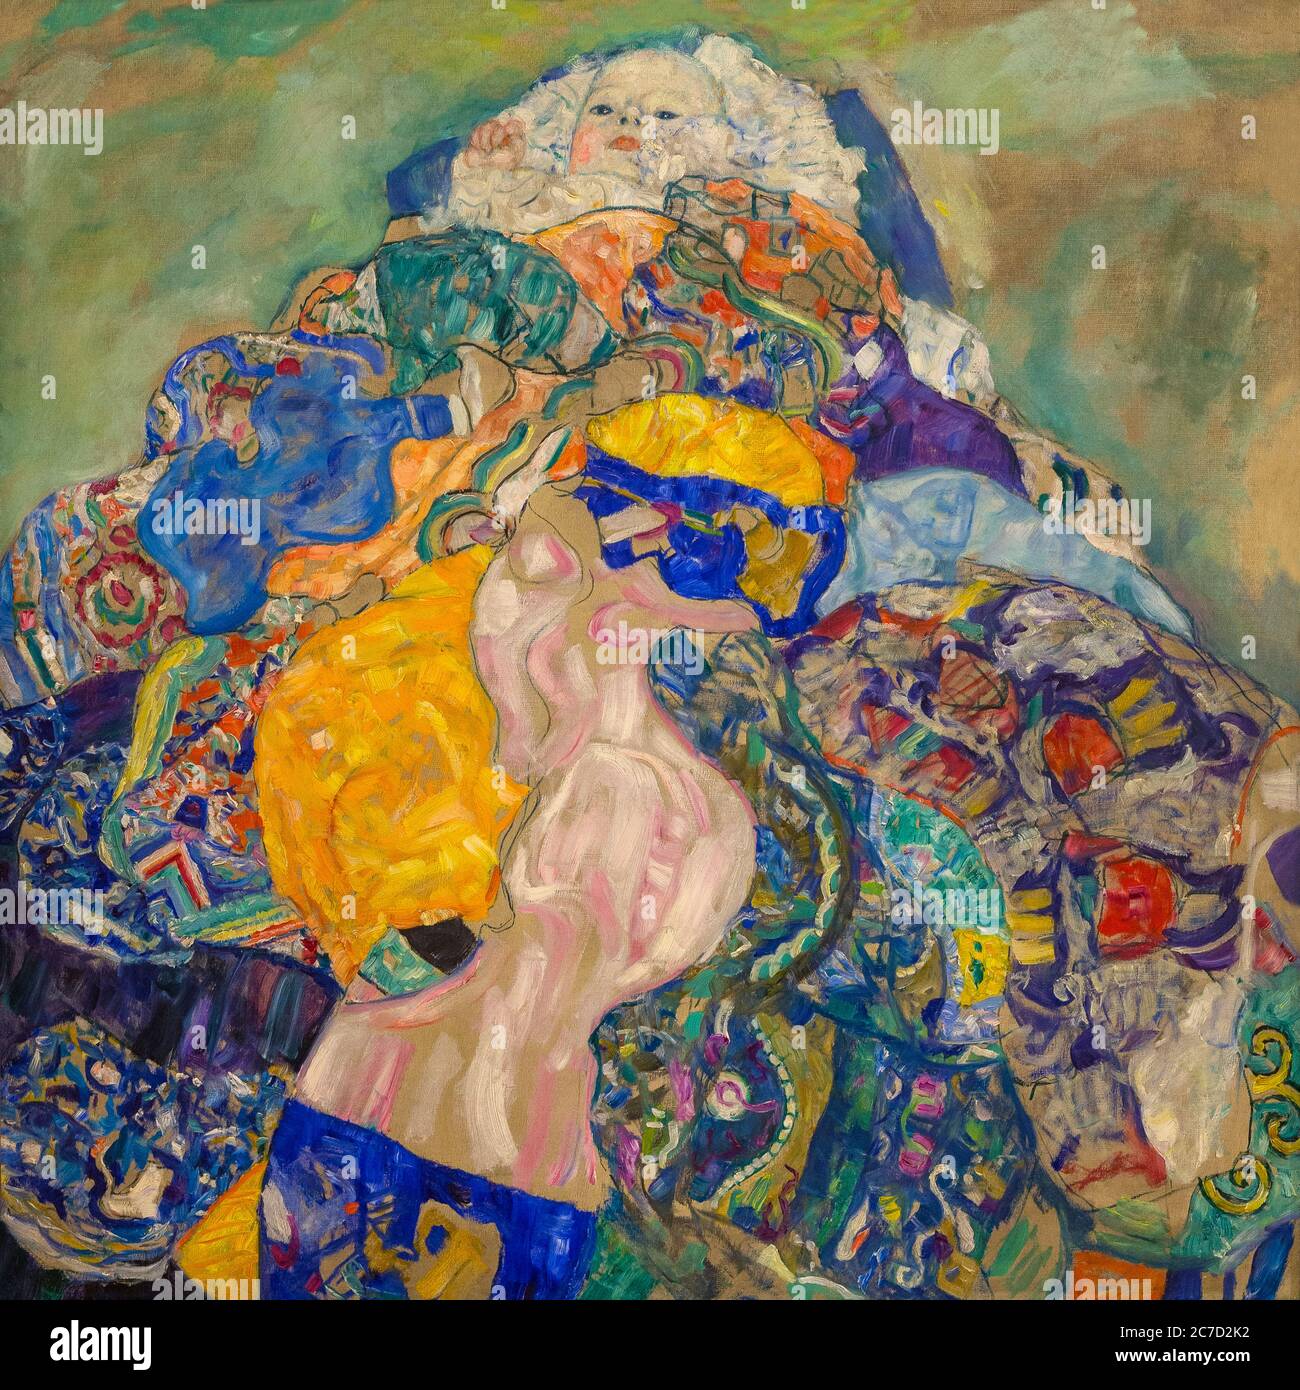 Bébé, berceau, Gustav Klimt, 1917-1918, National Gallery of Art, Washington DC, USA, Amérique du Nord Banque D'Images